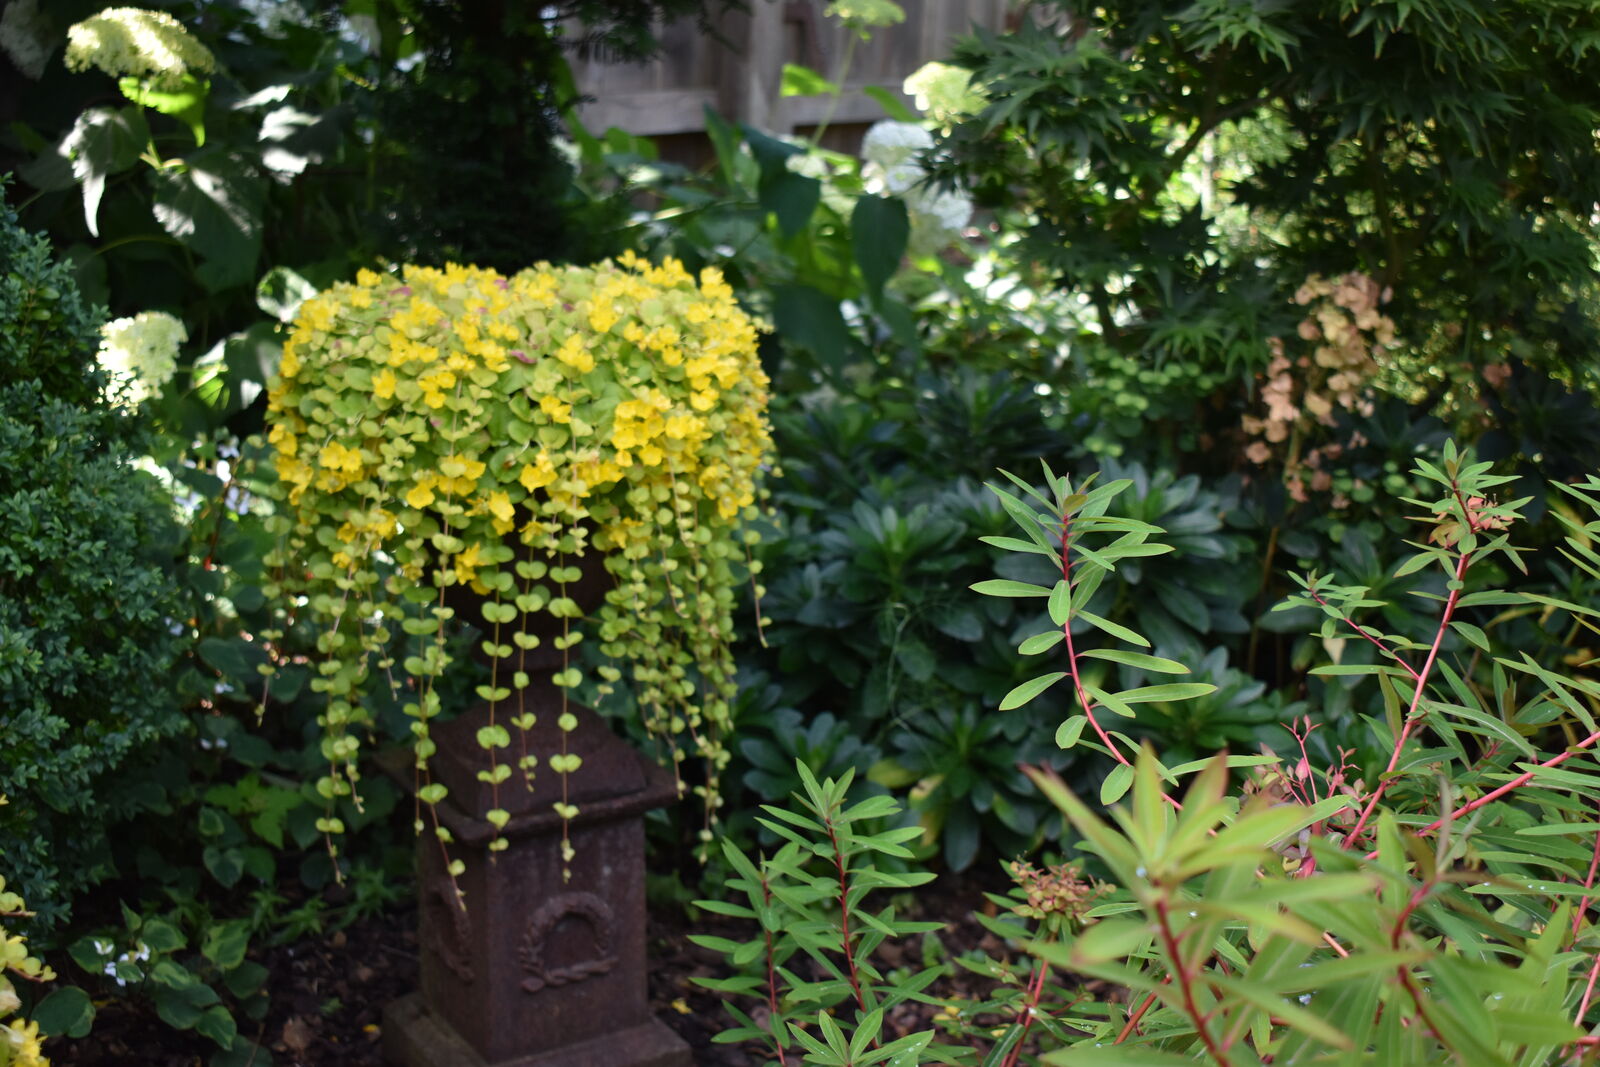 gelb blühende, abwärts wachsende Pflanze im Gefäß